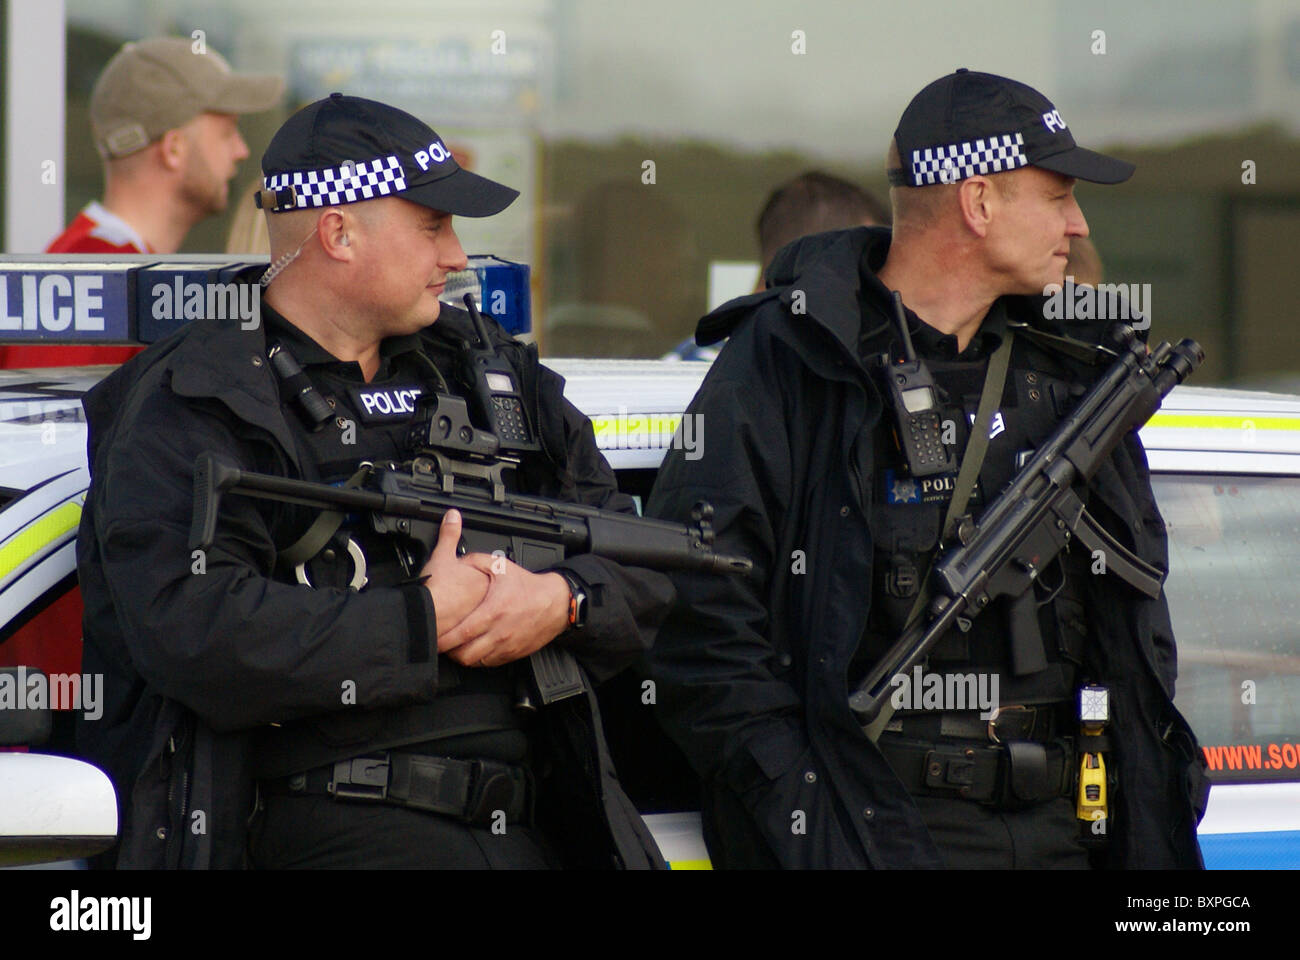 Une attaque terroriste, des policiers armés sur les rues du Royaume-Uni Banque D'Images